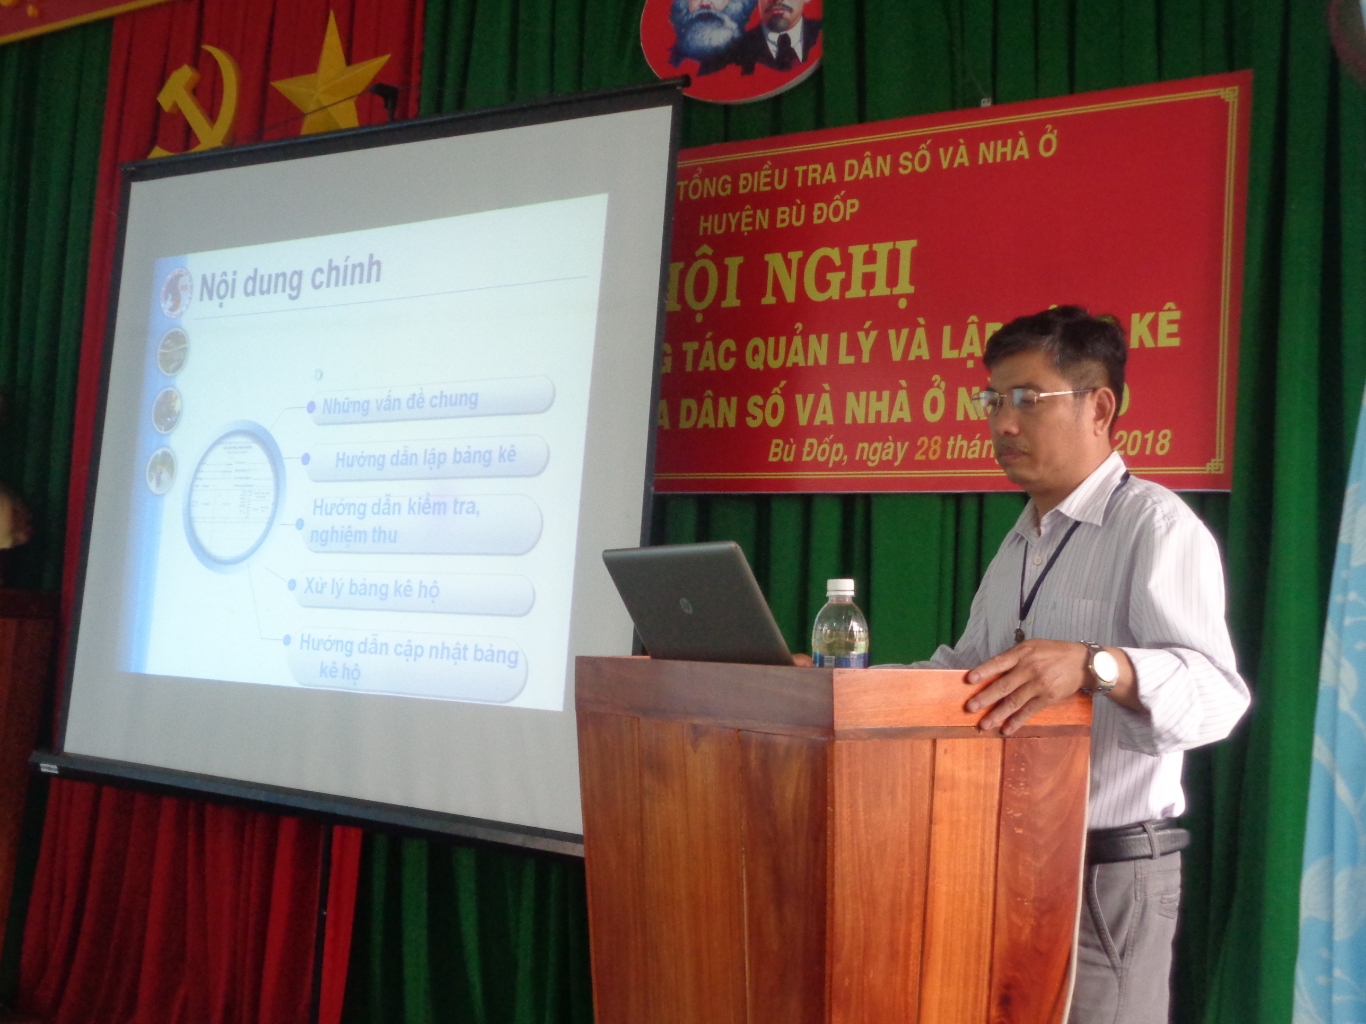 Tập huấn công tác lập bảng kê tổng điều tra dân số và nhà ở năm 2019 trên địa bàn tỉnh Bình Phước